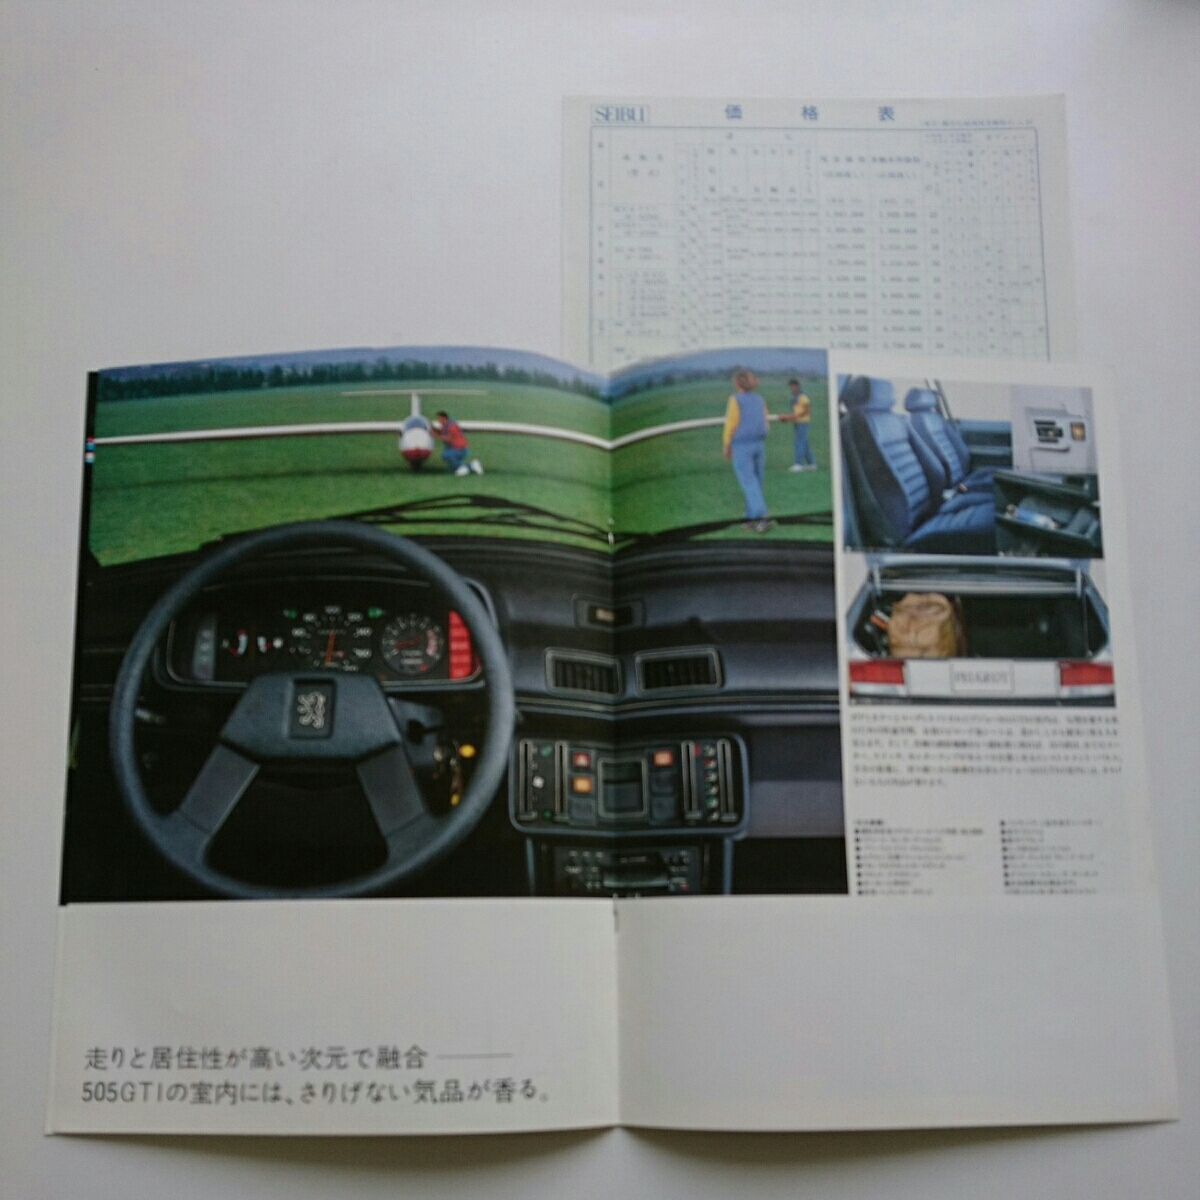  Peugeot 505GTI Showa 61 год 4 месяц выпуск 1986 год Seibu автомобиль ( стандартный дилер ) выпуск каталог + таблица цен не прочитан товар редкий распроданный машина 